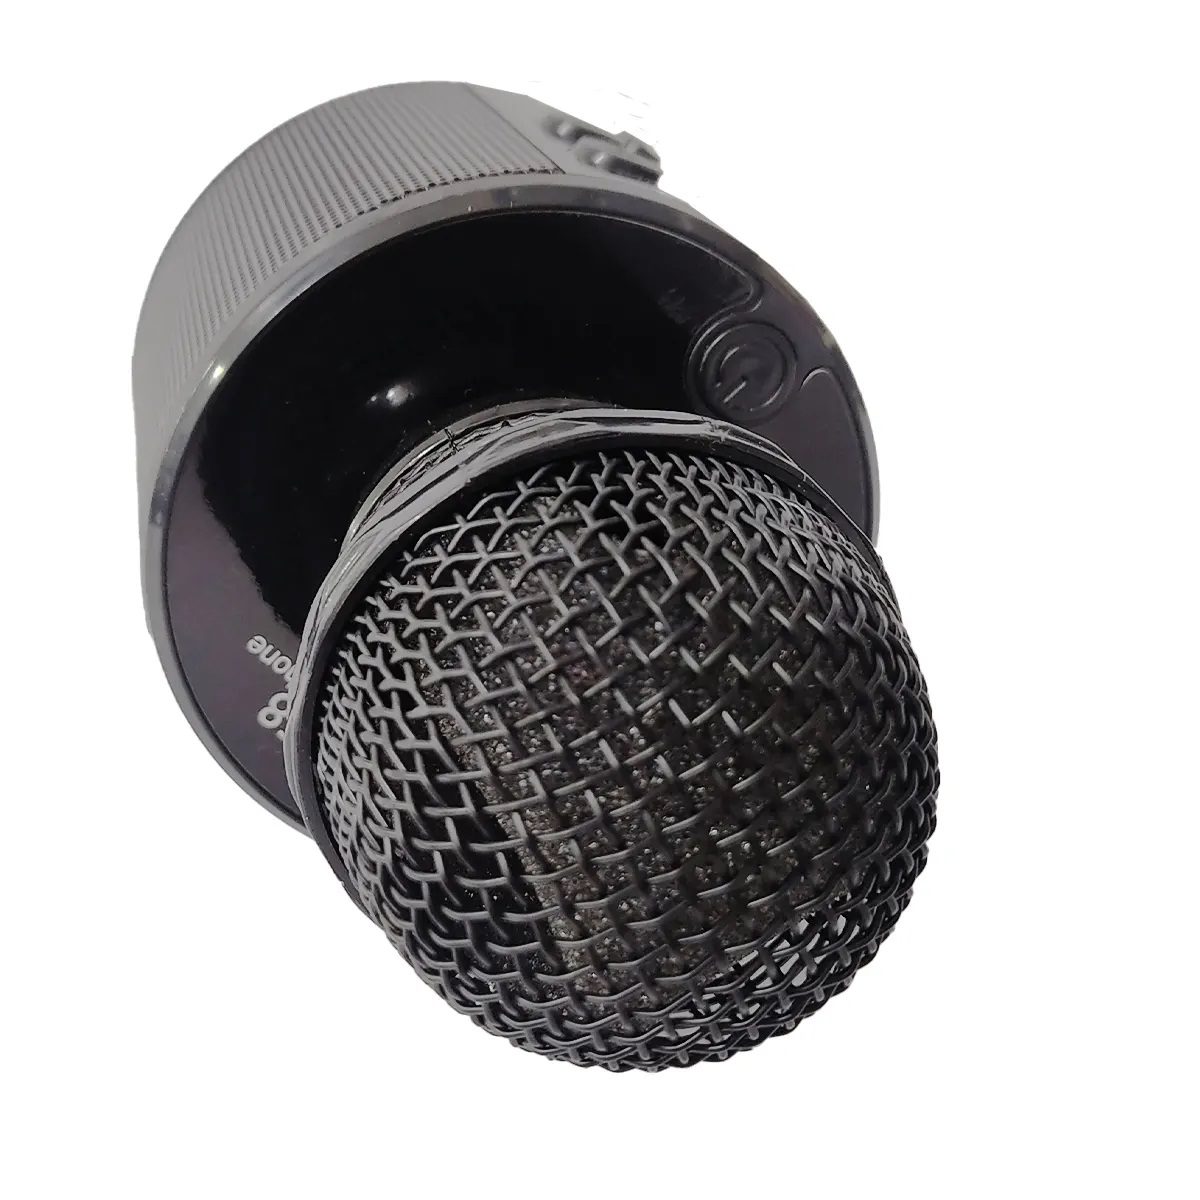 میکروفون اسپیکر مدل WS-858